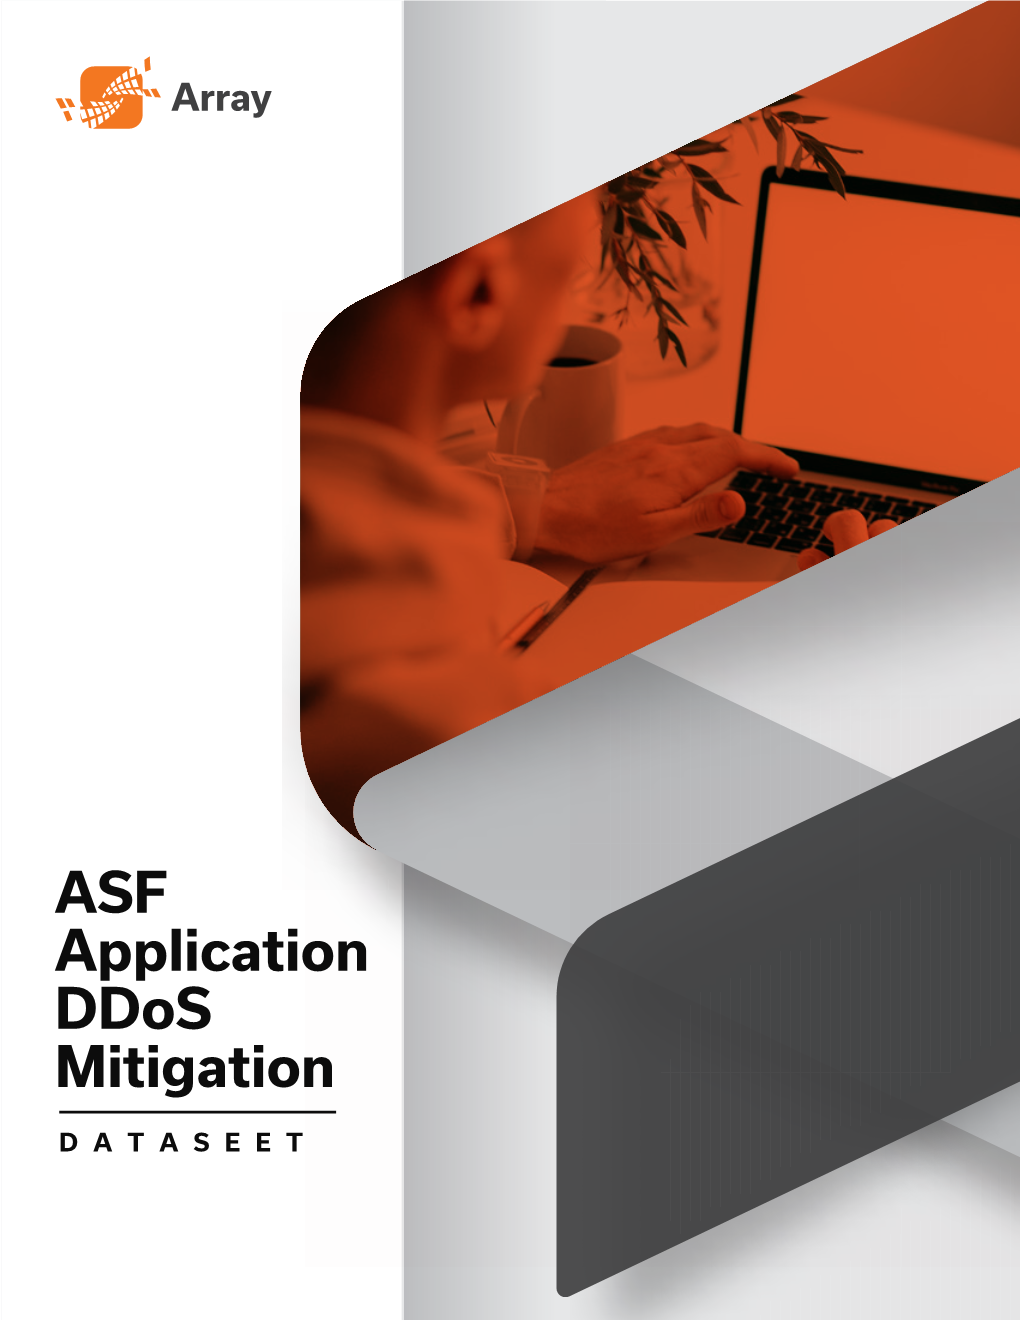 ASF Series Ddos Mitigation Datasheet